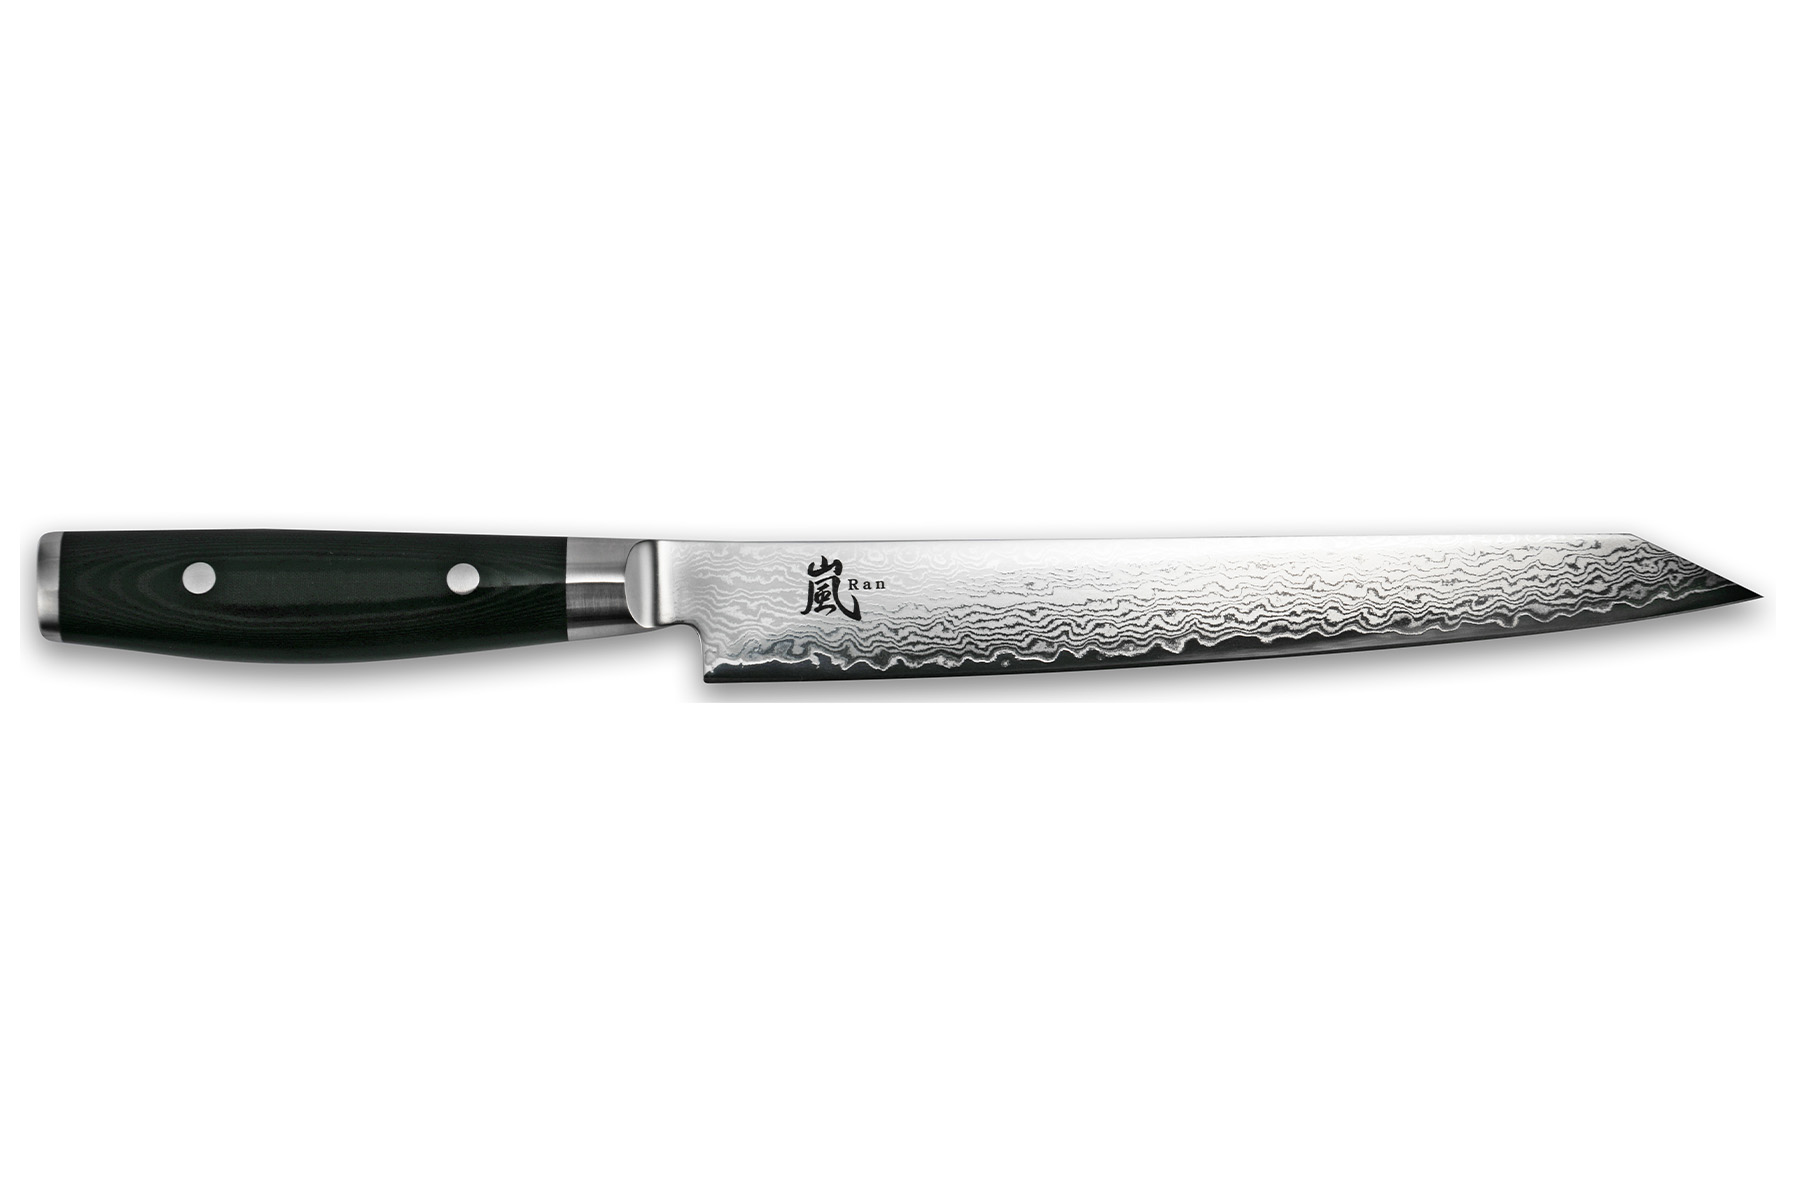 Couteau japonais Yaxell "Ran" - Couteau trancheur 23 cm